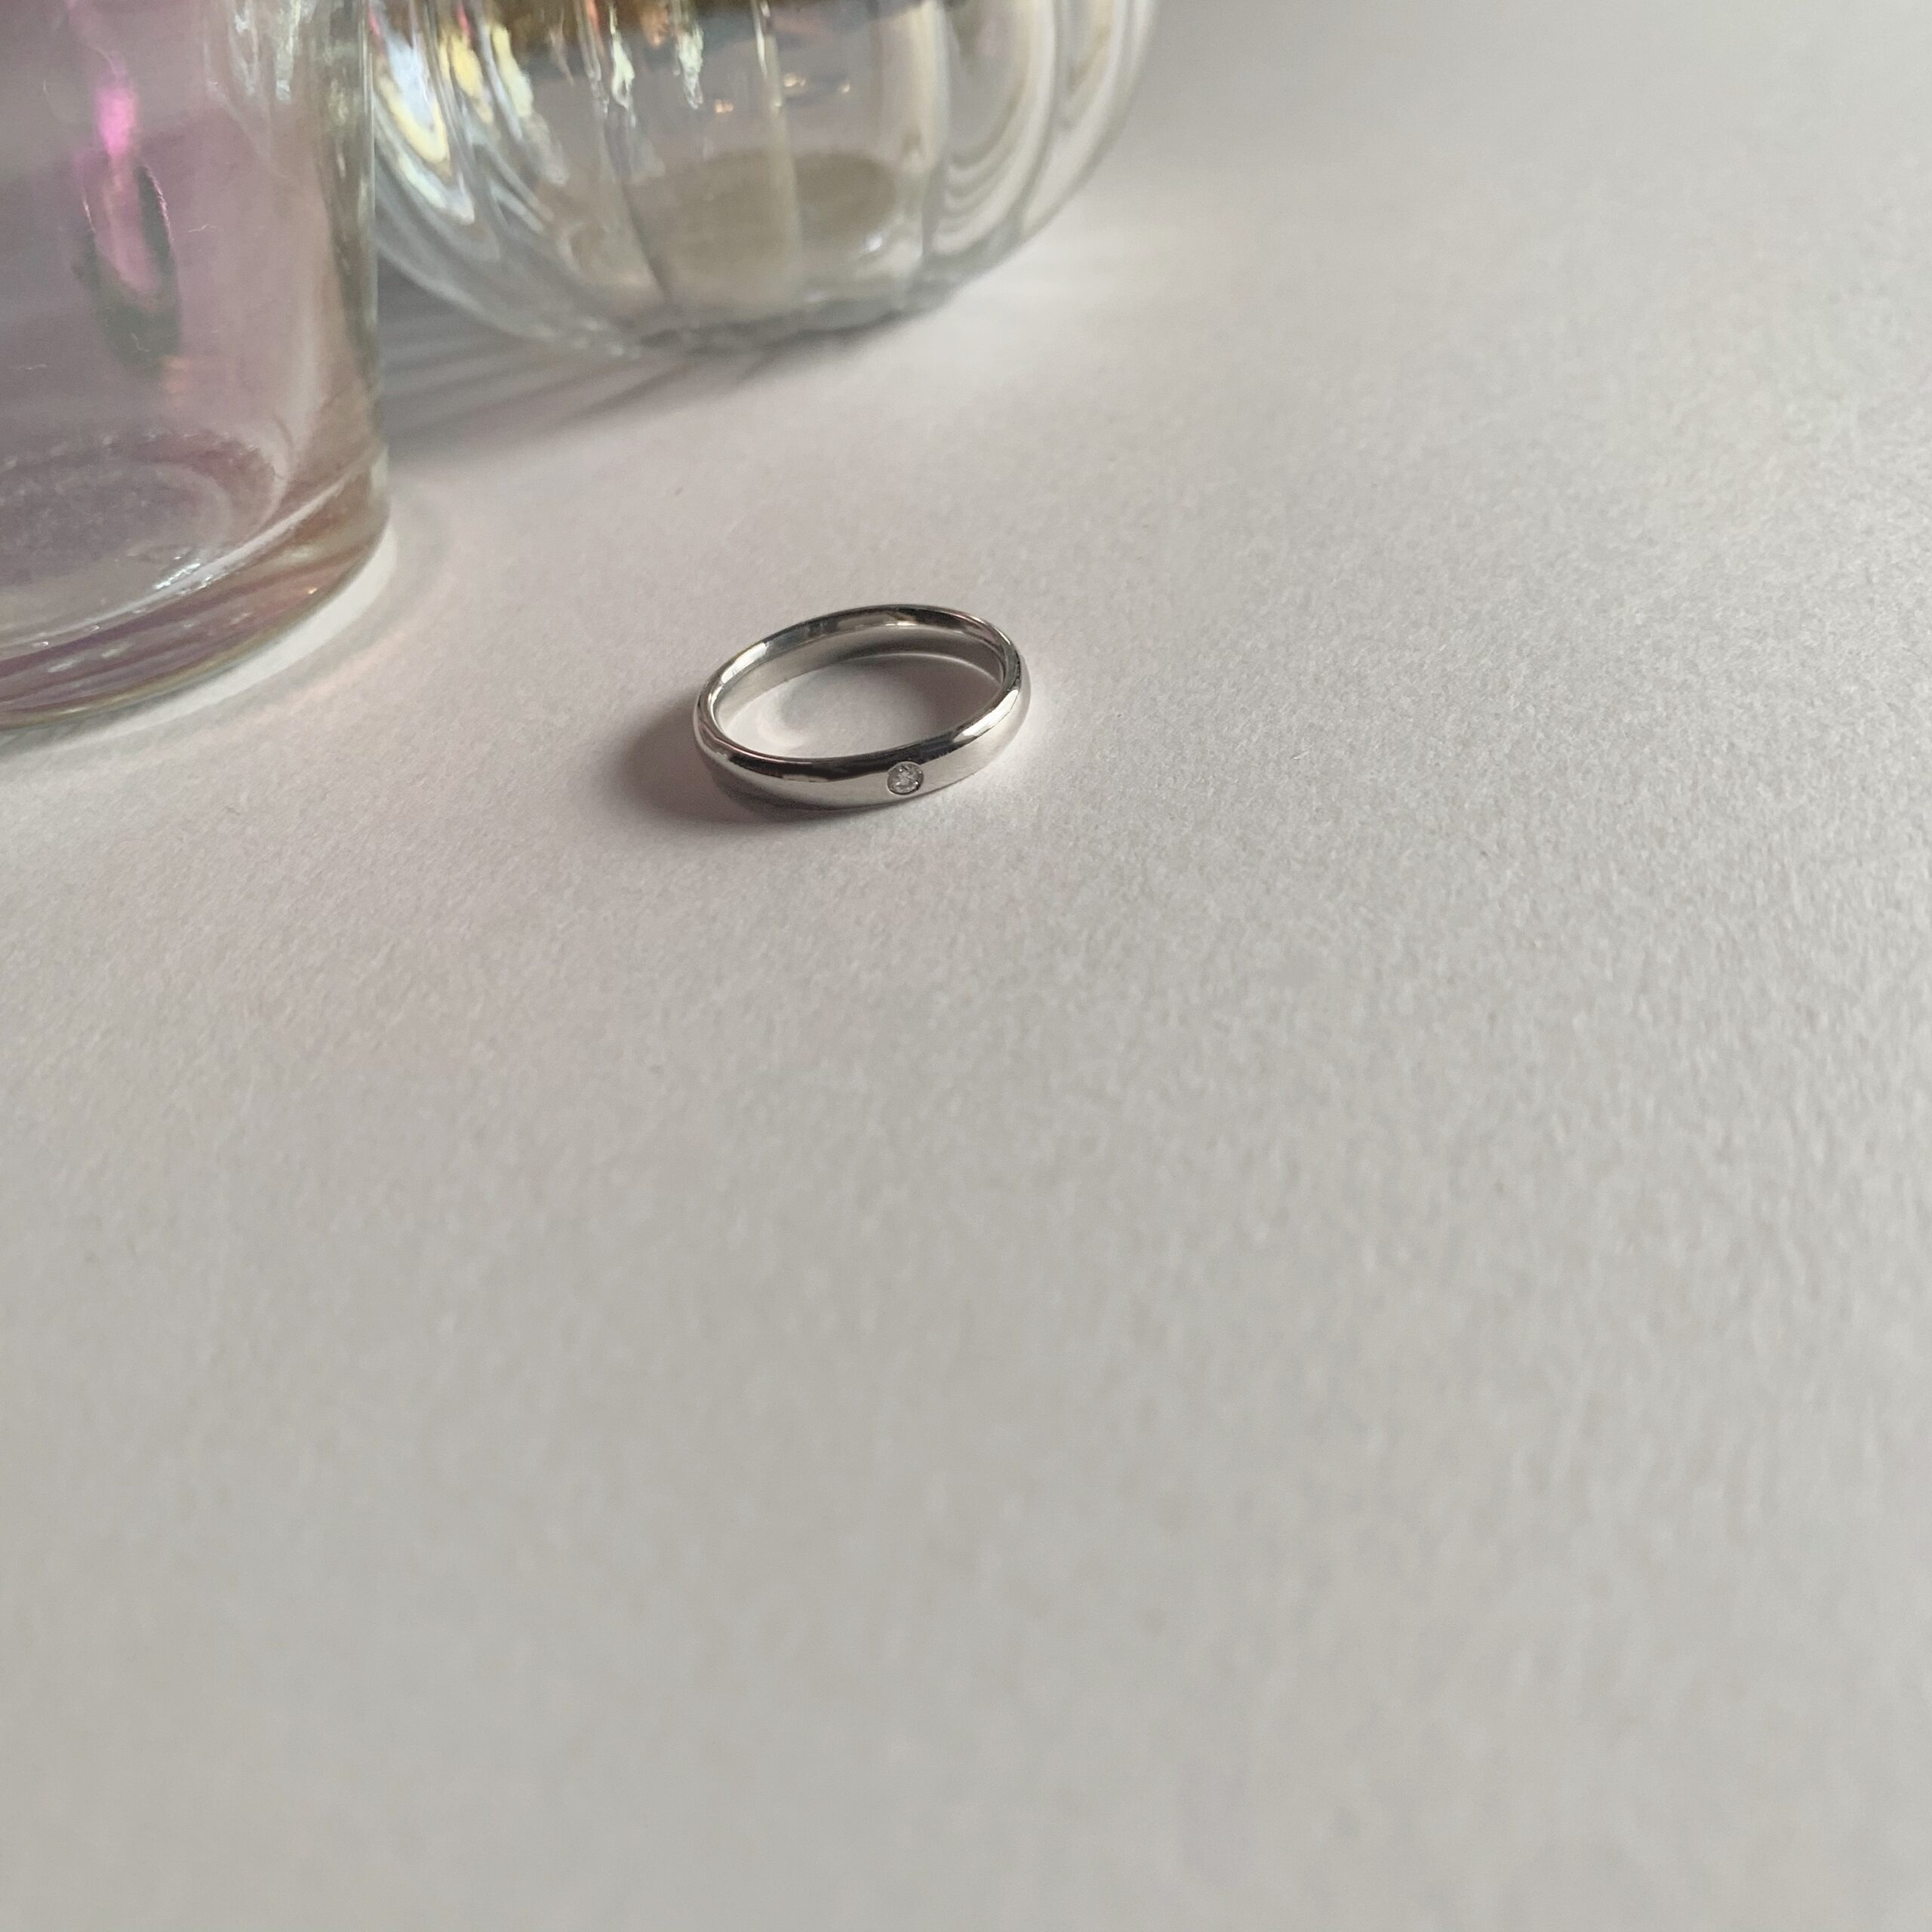 品質重視』指輪 ダイヤモンド D1.00ct プラチナ 一粒 ダイヤ リン3